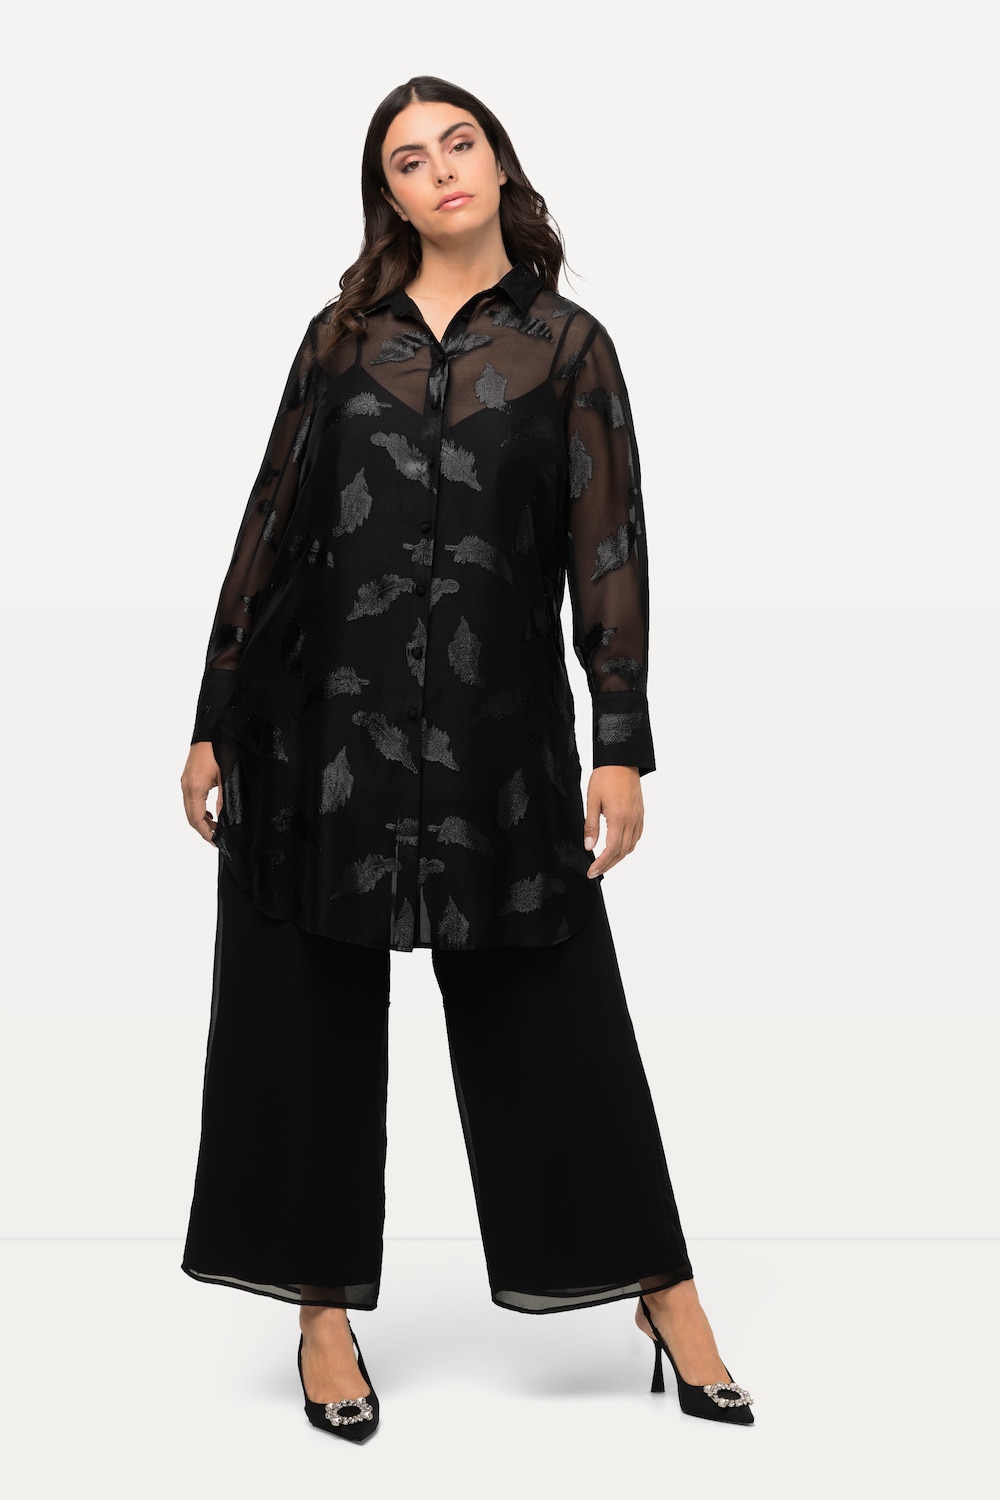 Grote Maten longline blouse, Dames, zwart, Maat: 58/60, Polyester/Metallic vezels, Ulla Popken